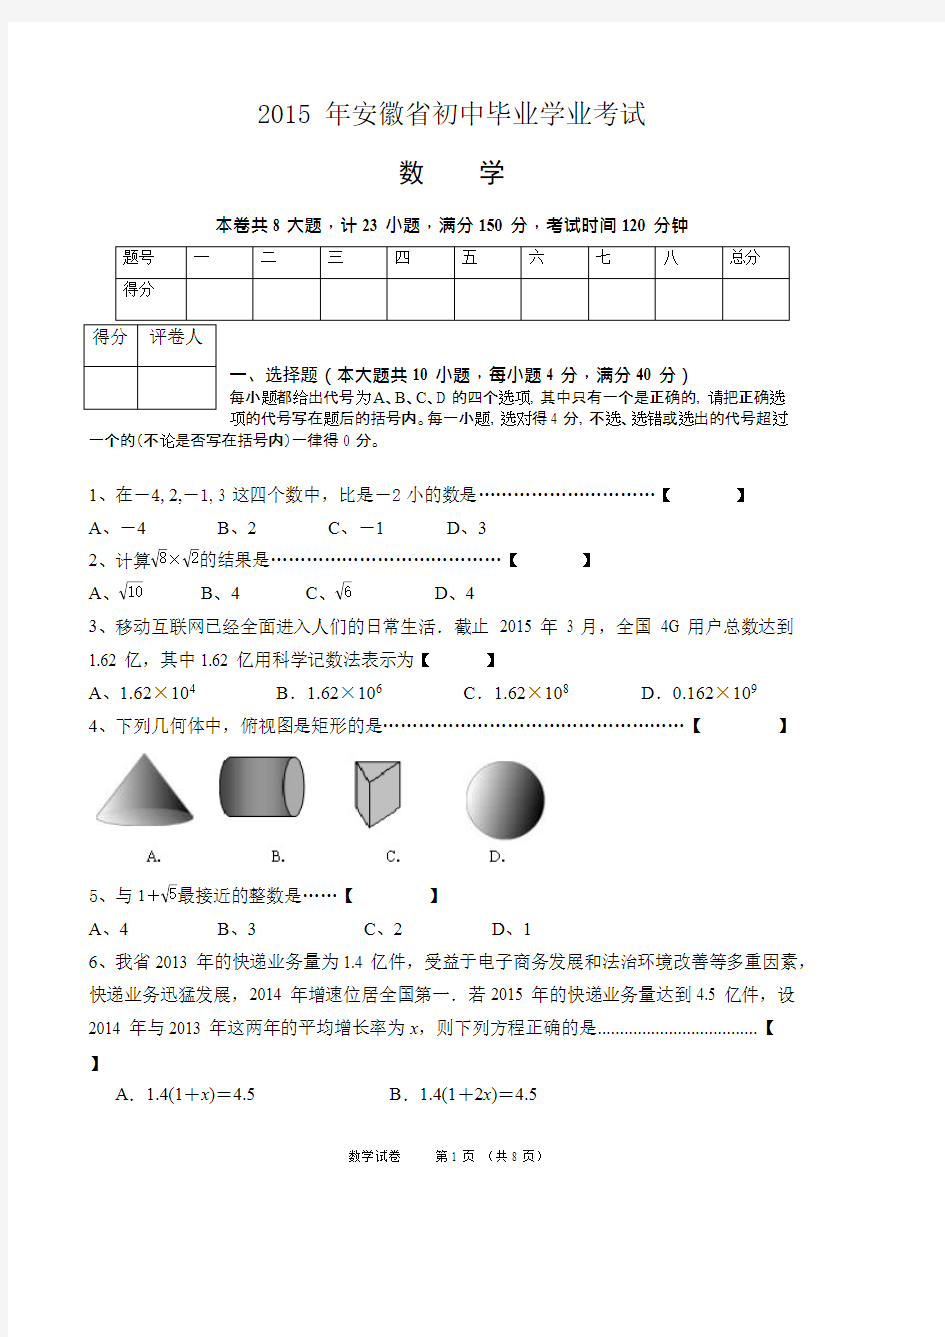 (完整)2015安徽中考数学试题及答案,推荐文档